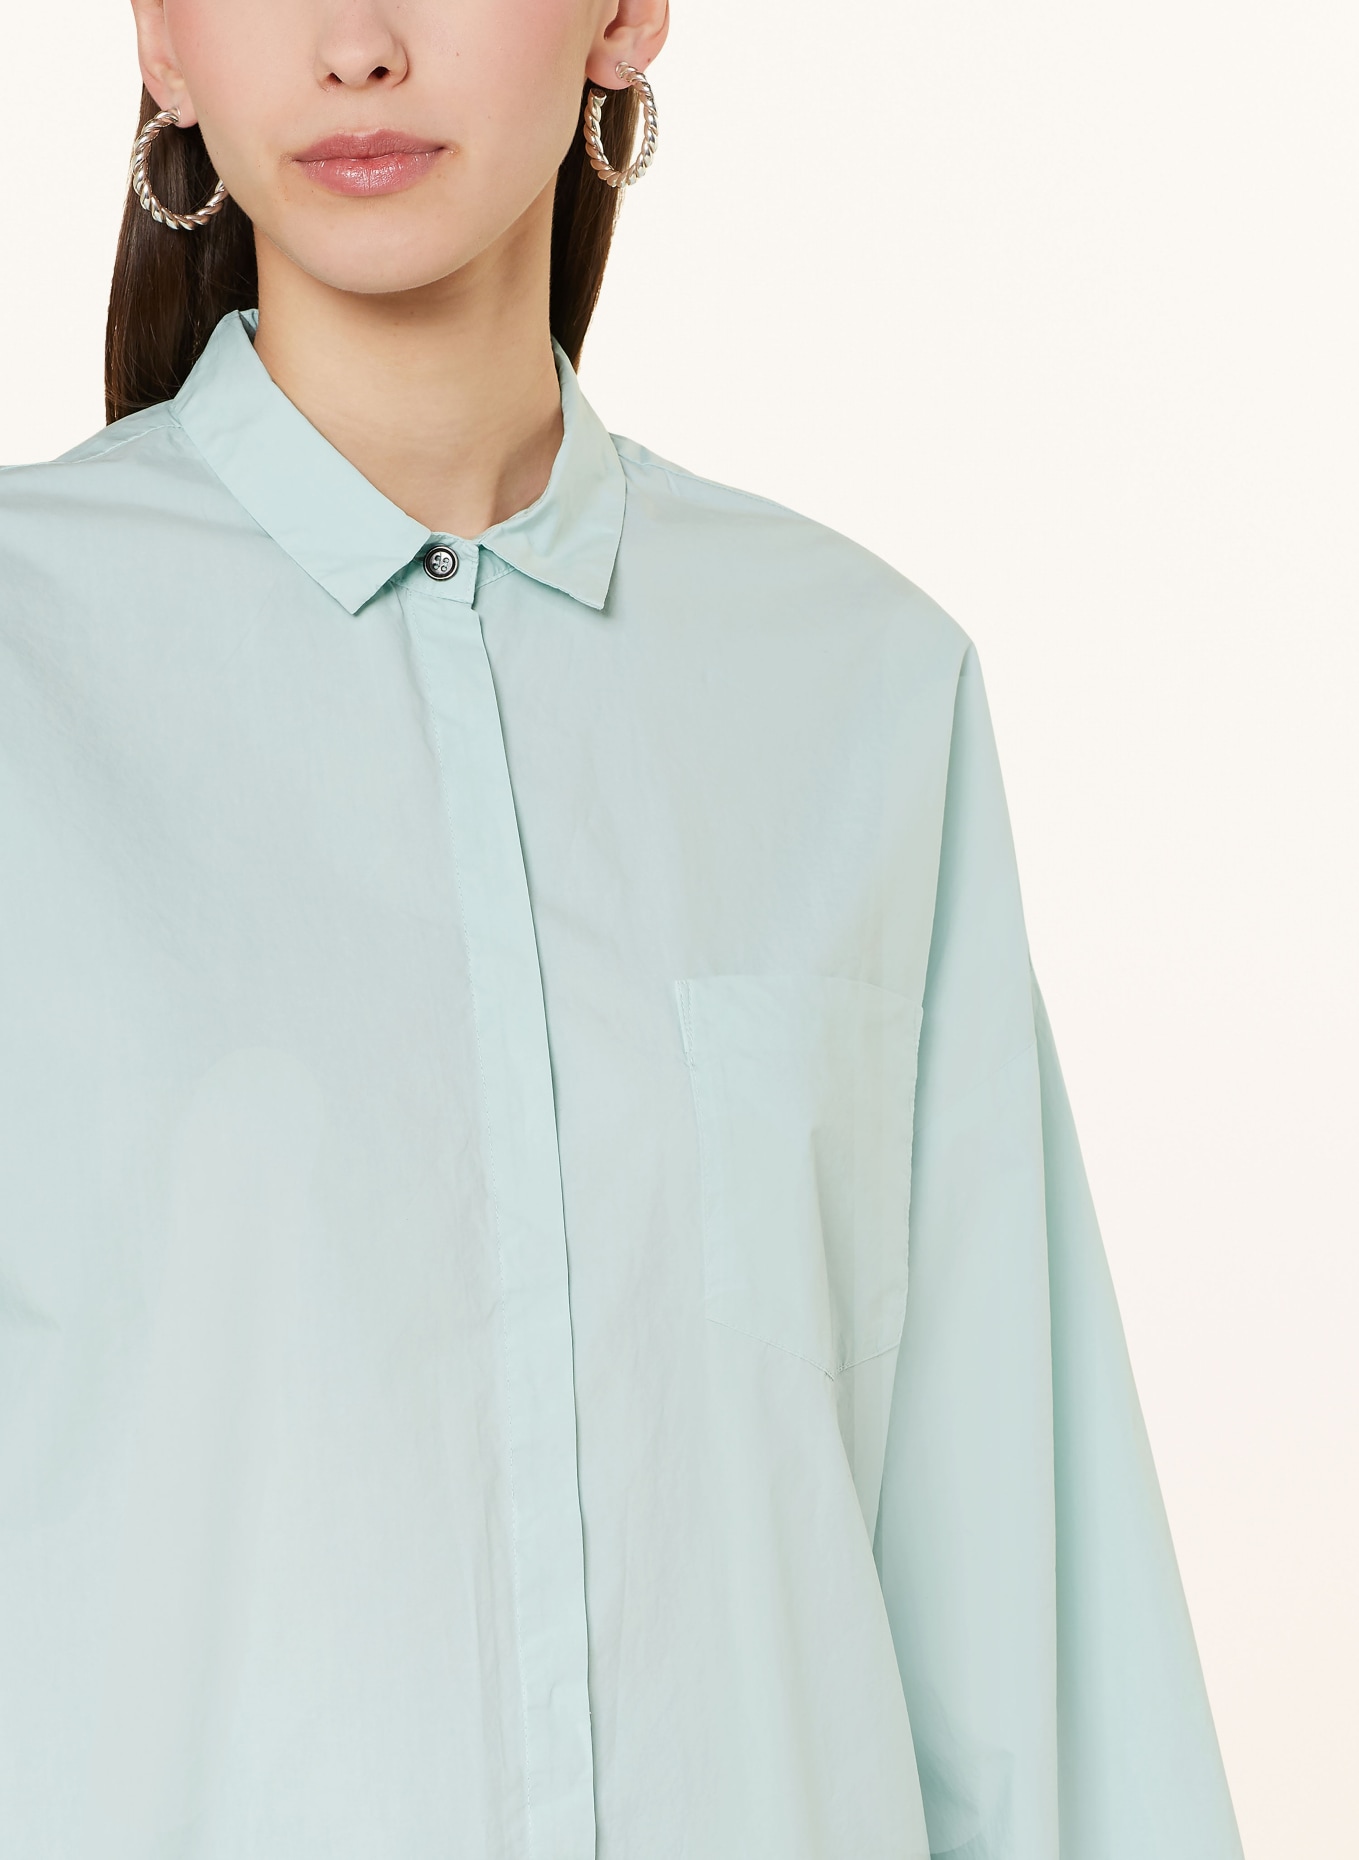 nine:inthe:morning Shirt blouse AMANDA, Color: MINT (Image 4)